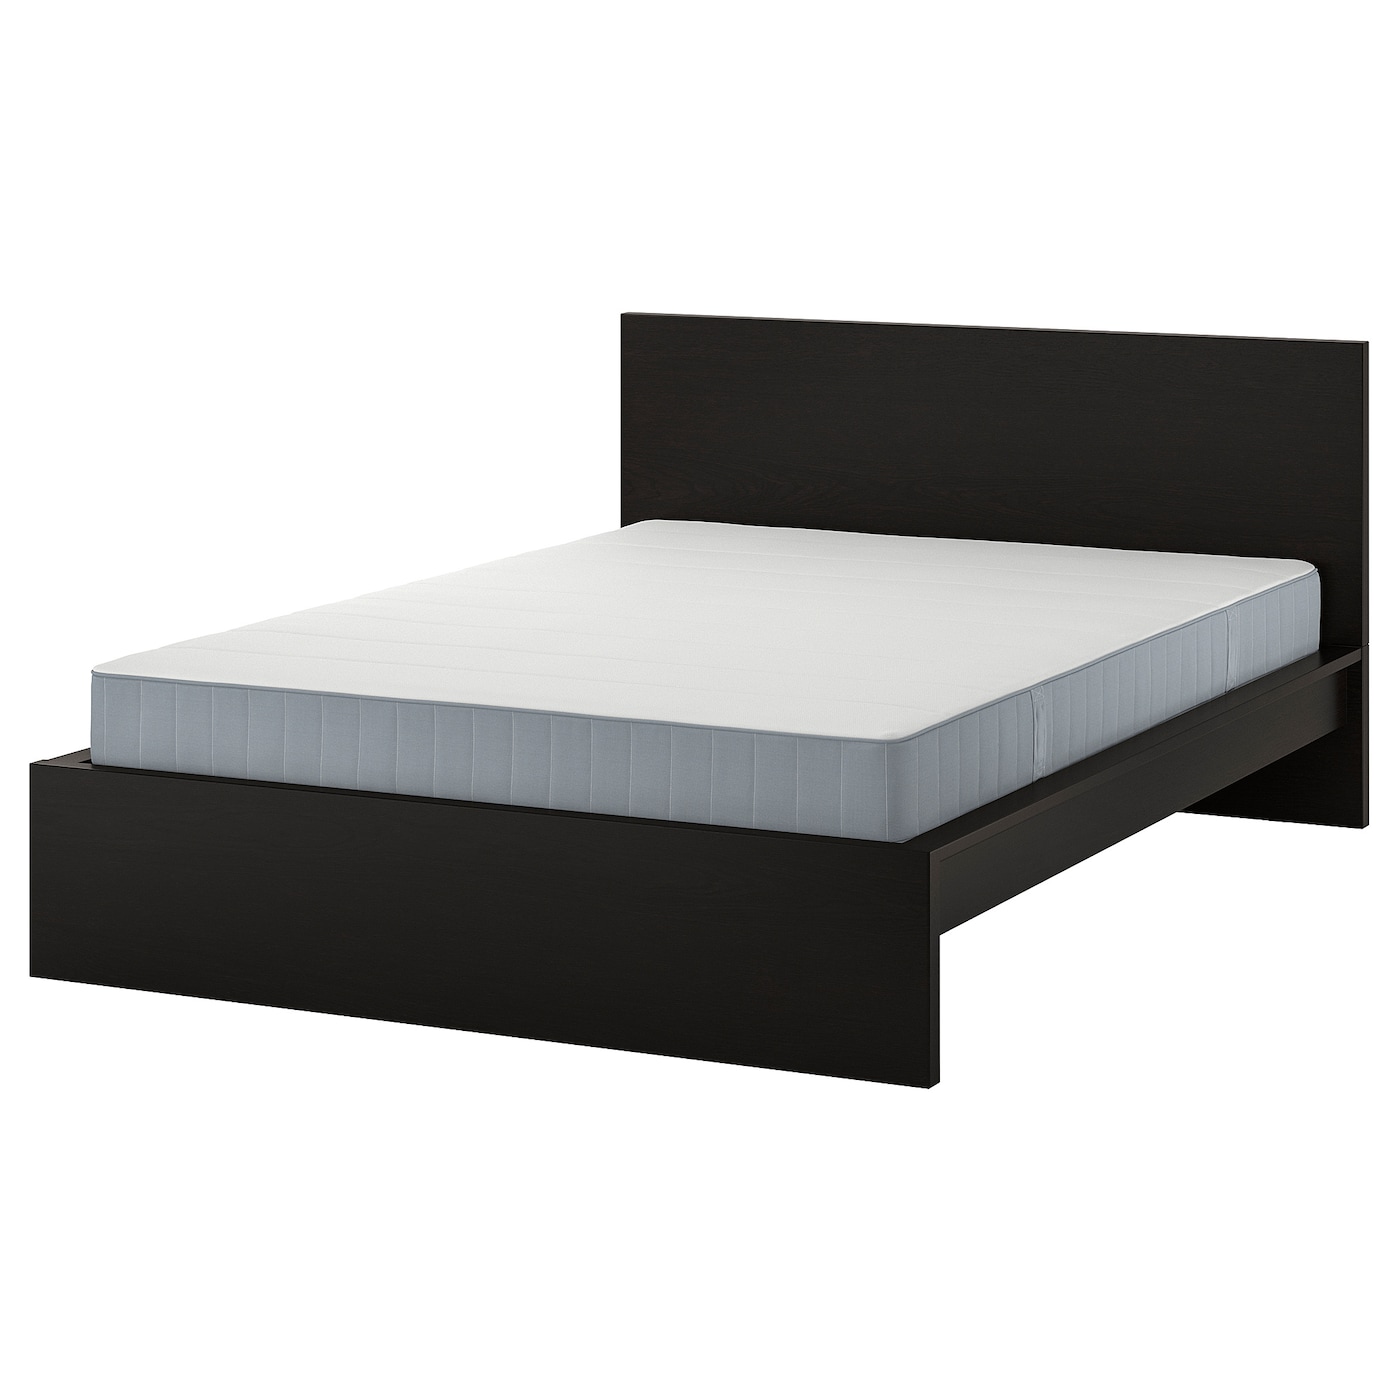 Кровать - IKEA MALM, 200х140 см, матрас средней жесткости, черный, МАЛЬМ ИКЕА